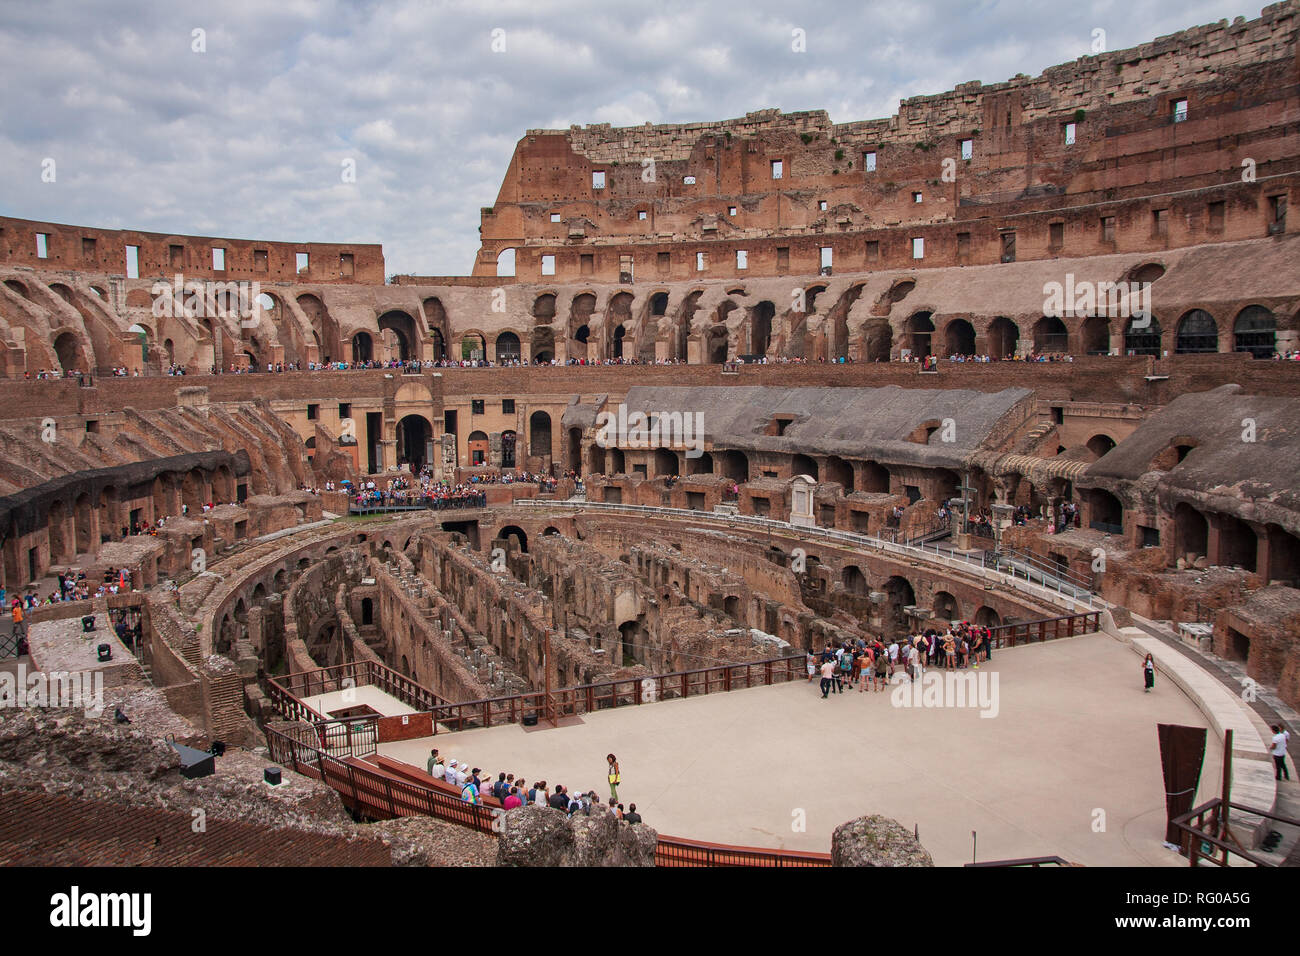 Interior of Colosseum Rome Stock Photo